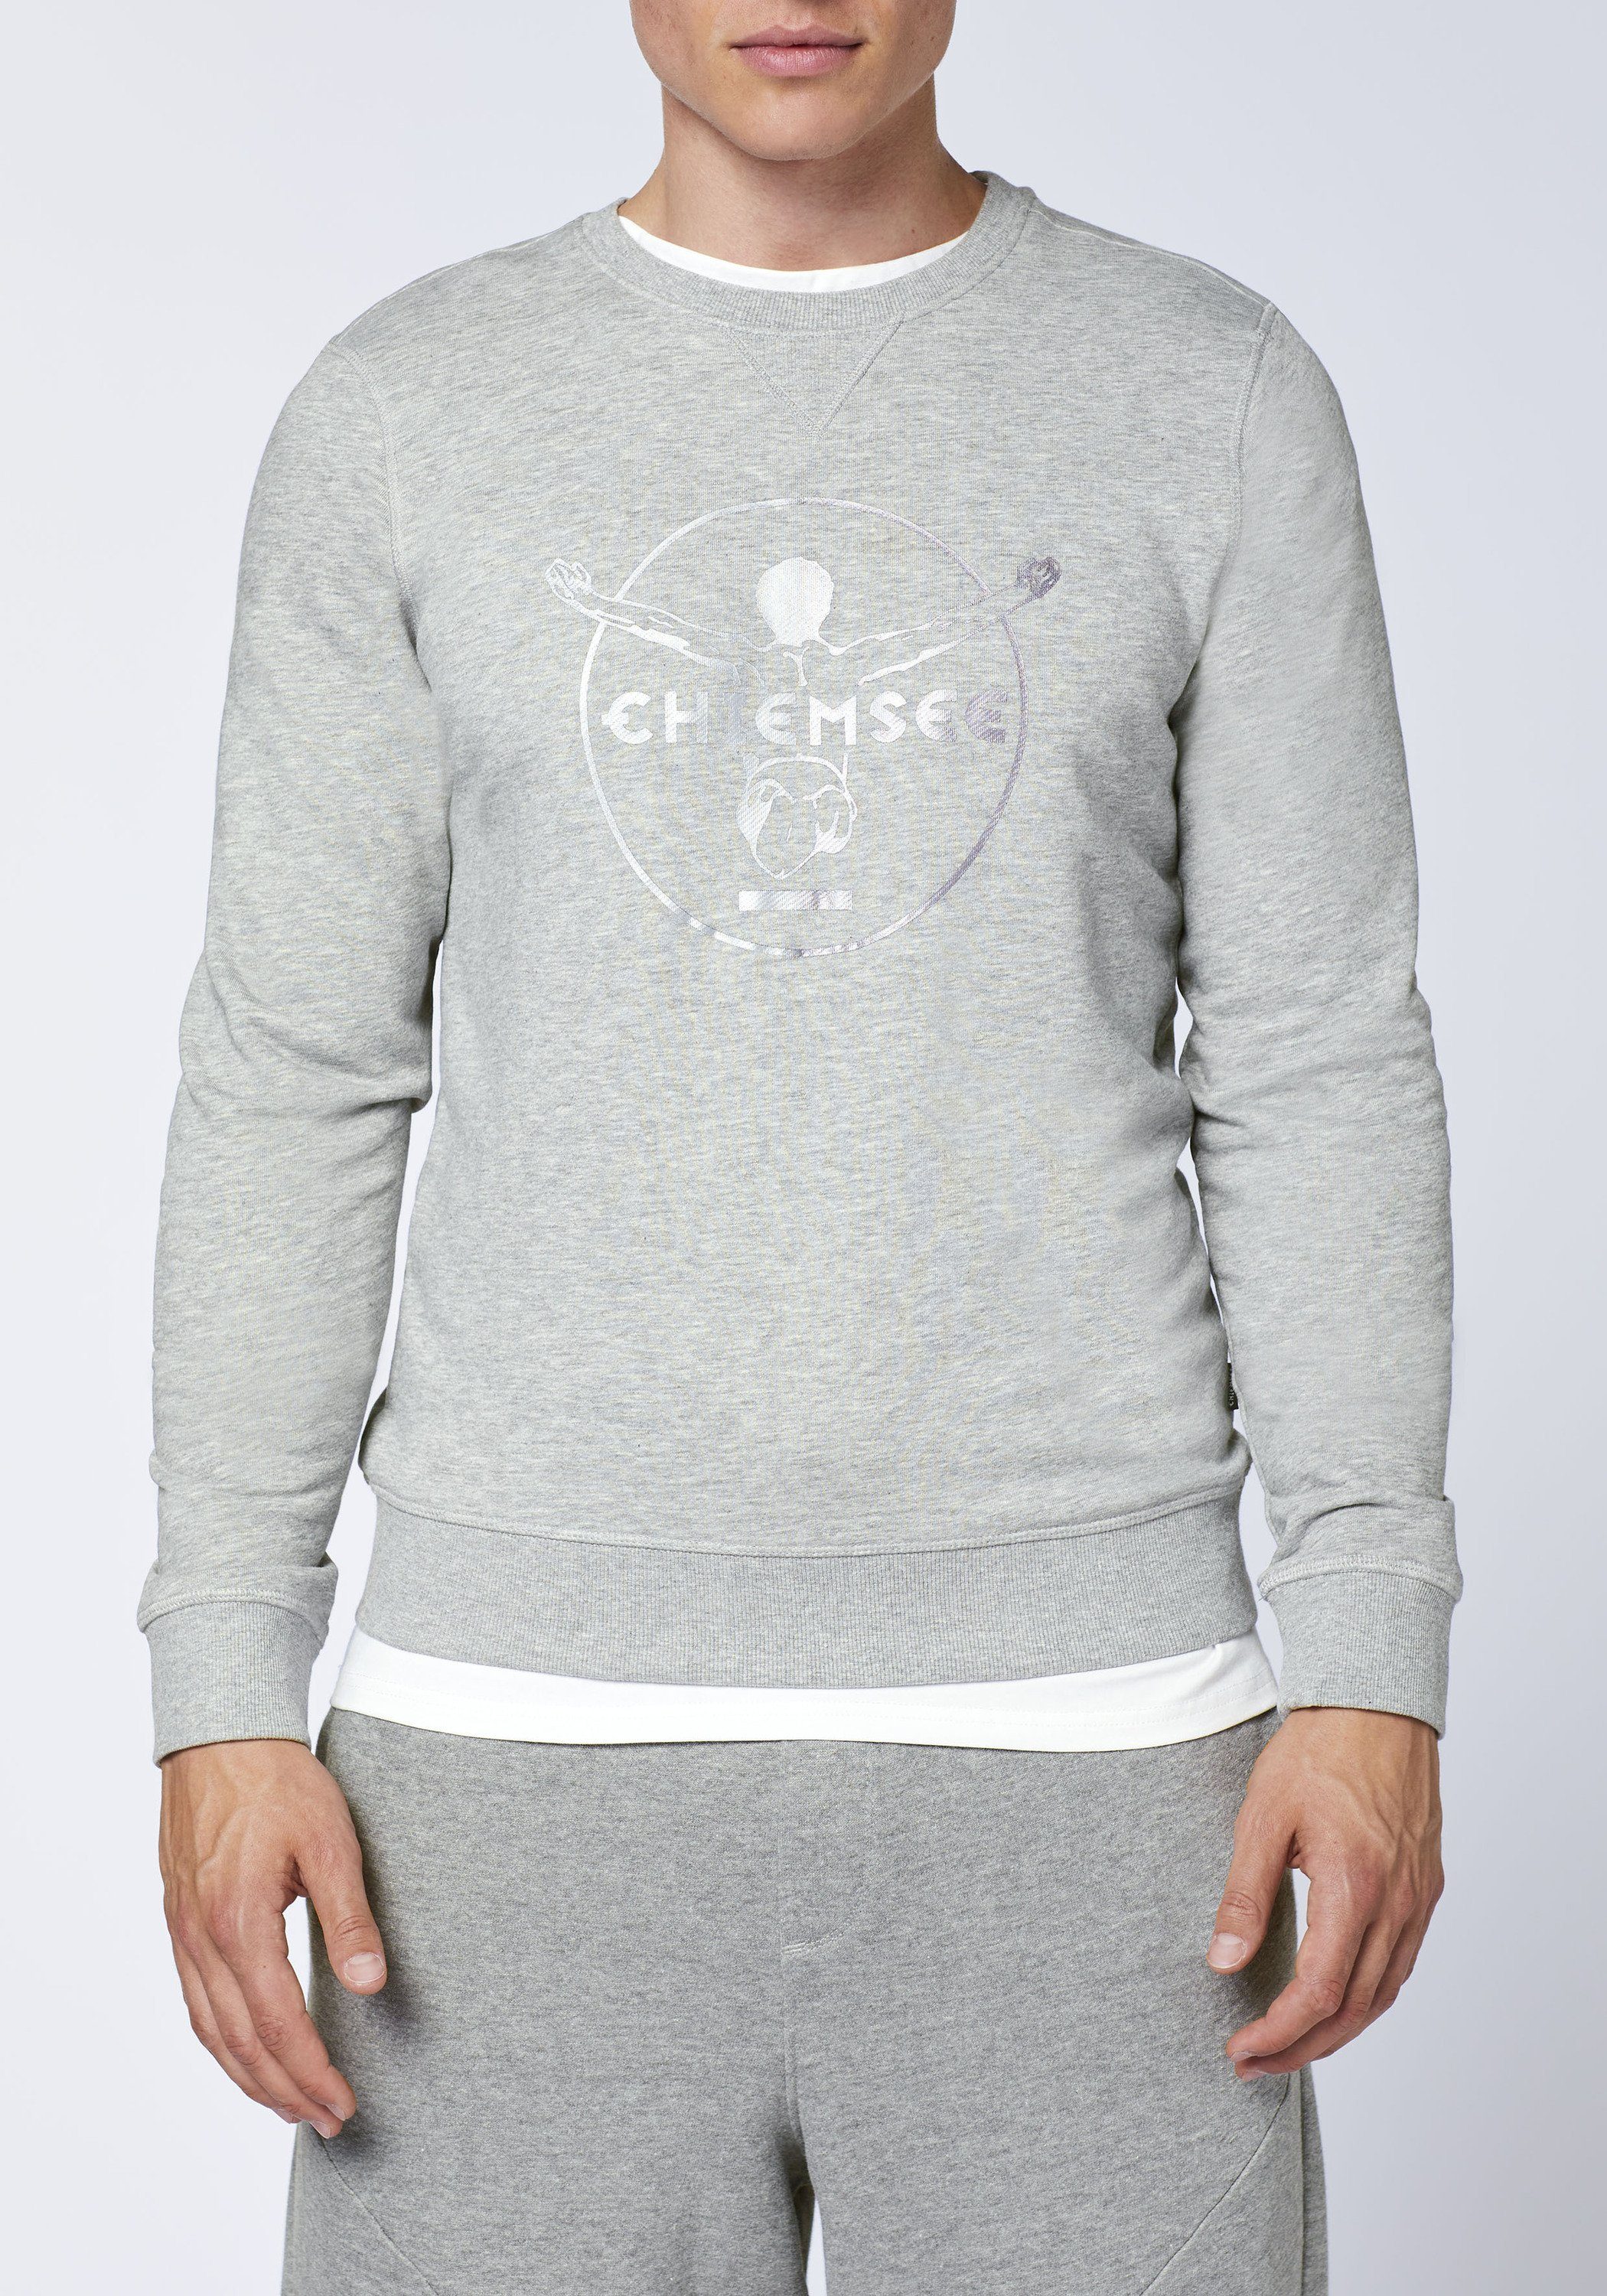 Sweatshirt grau/hell Chiemsee blau 1 Label-Look im Sweater mittel